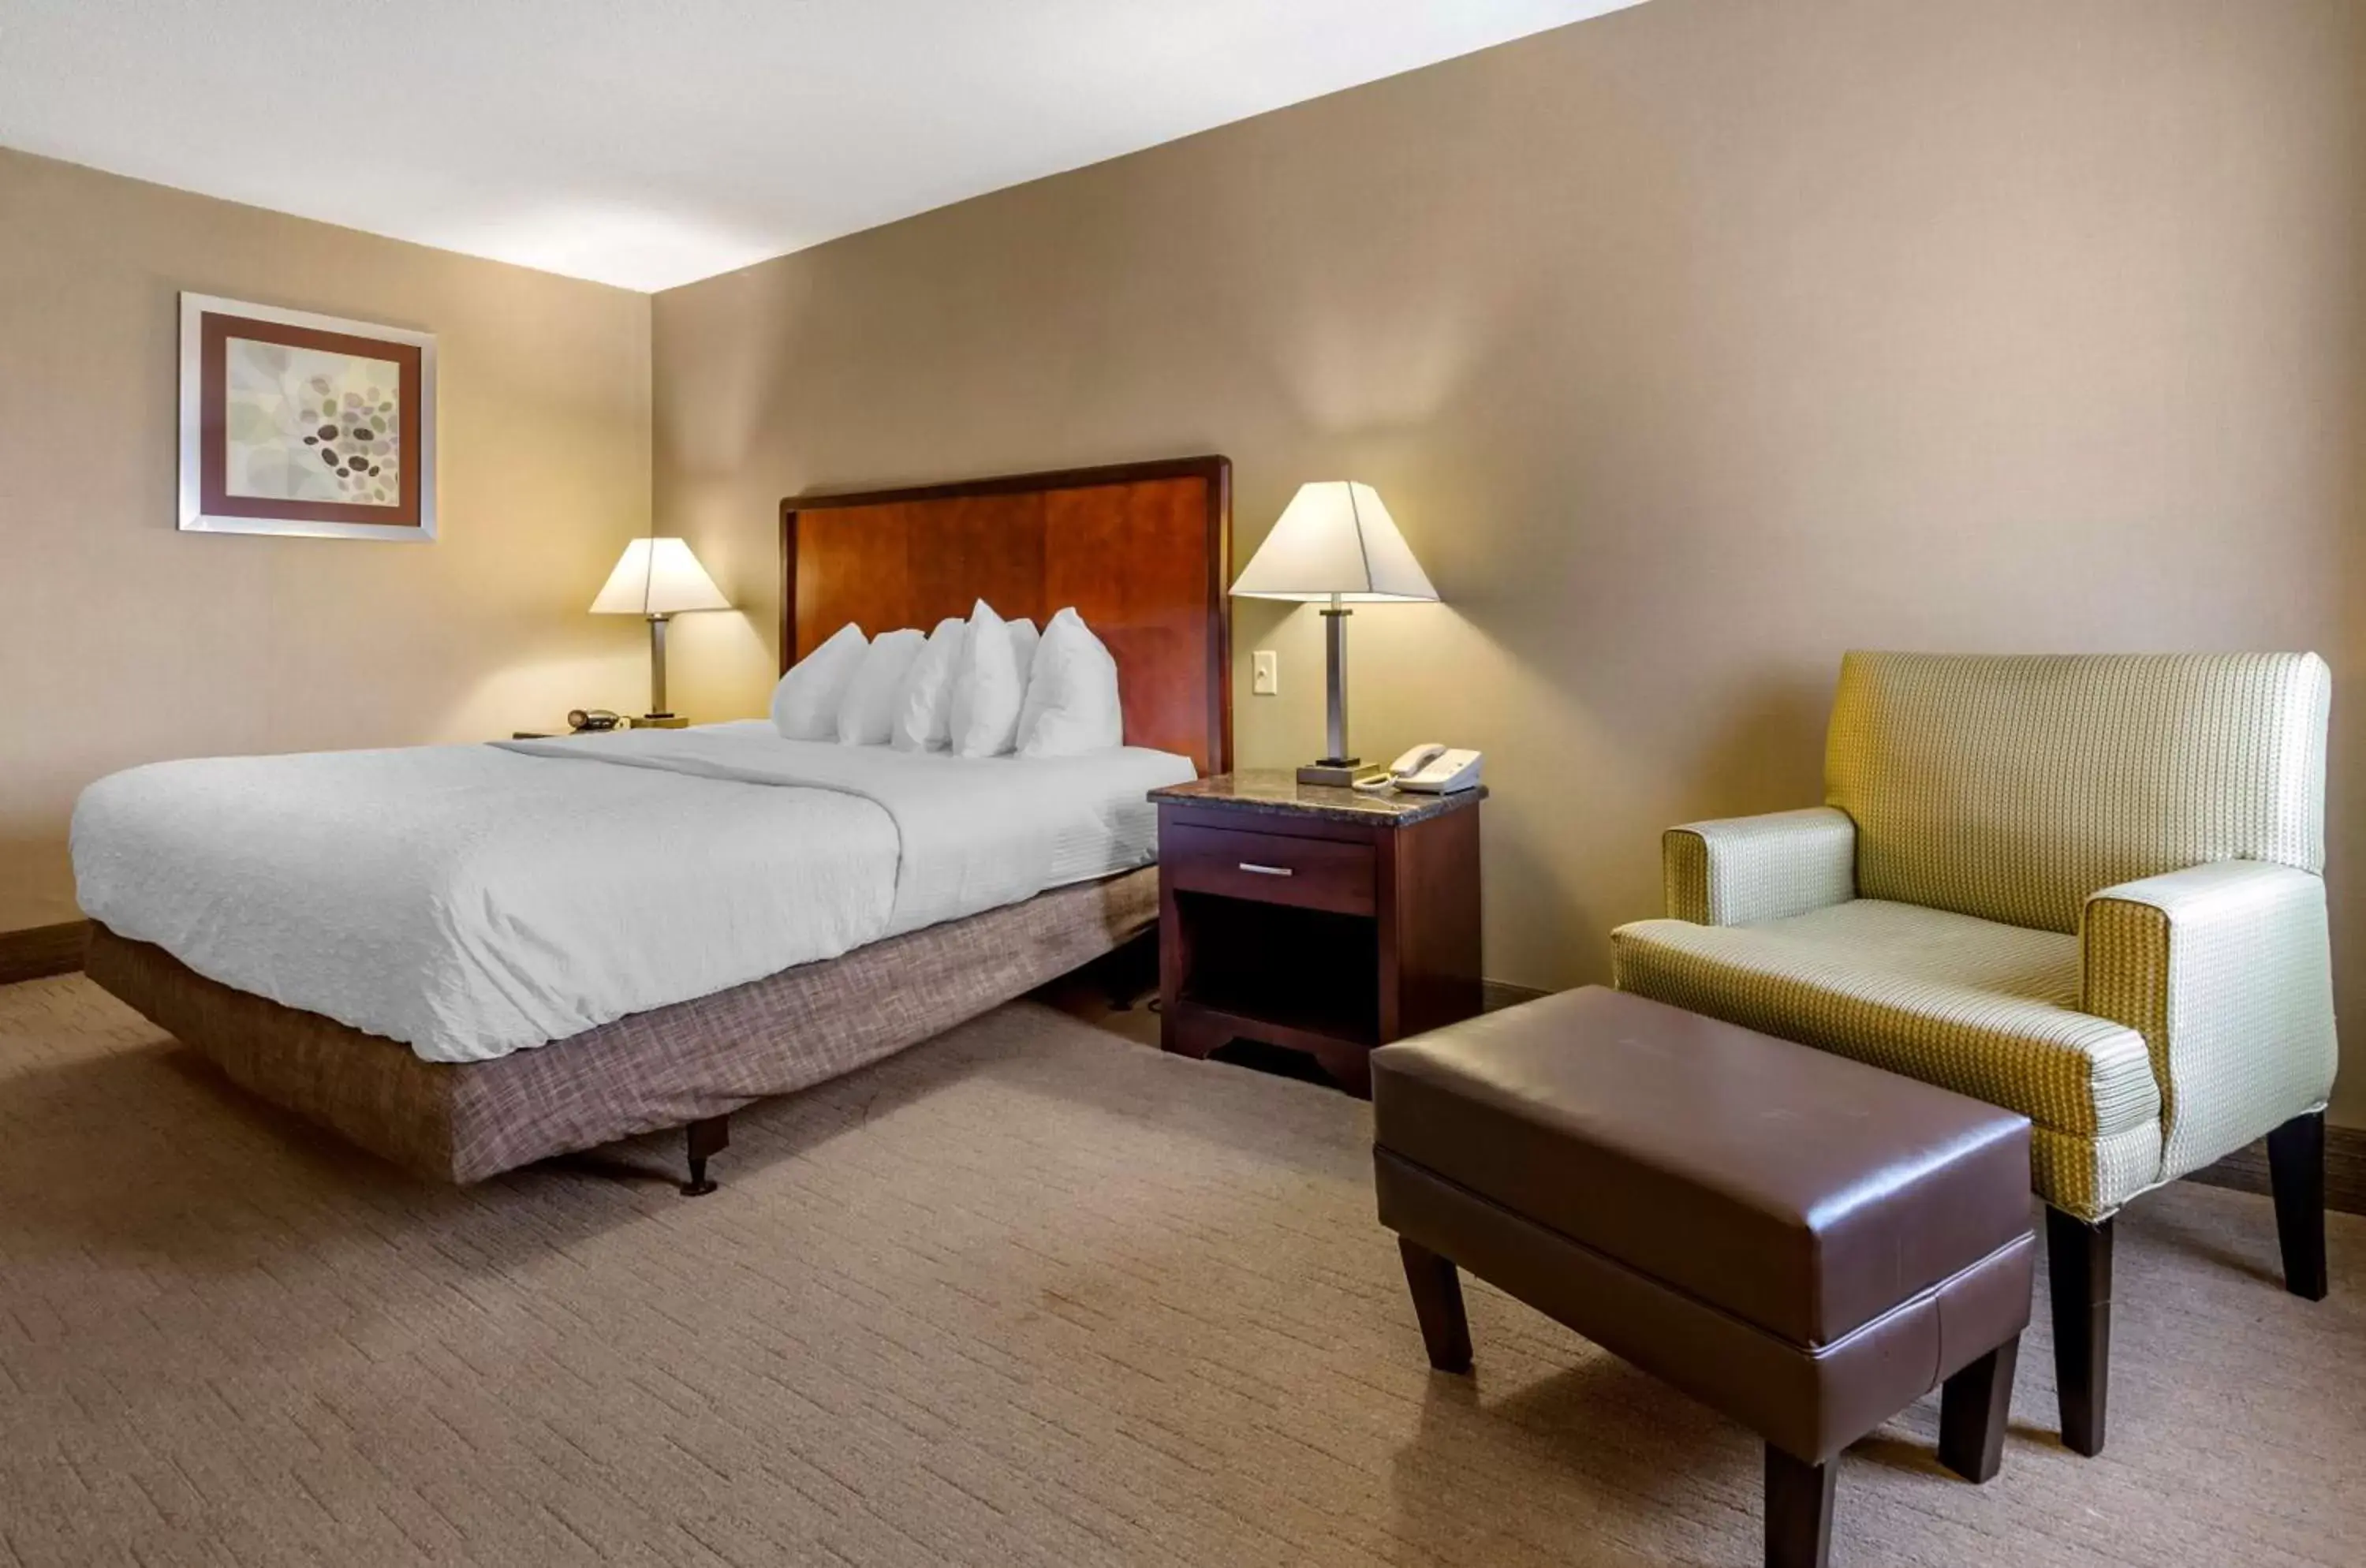 Bedroom, Bed in Best Western Plus Inn at Hunt Ridge